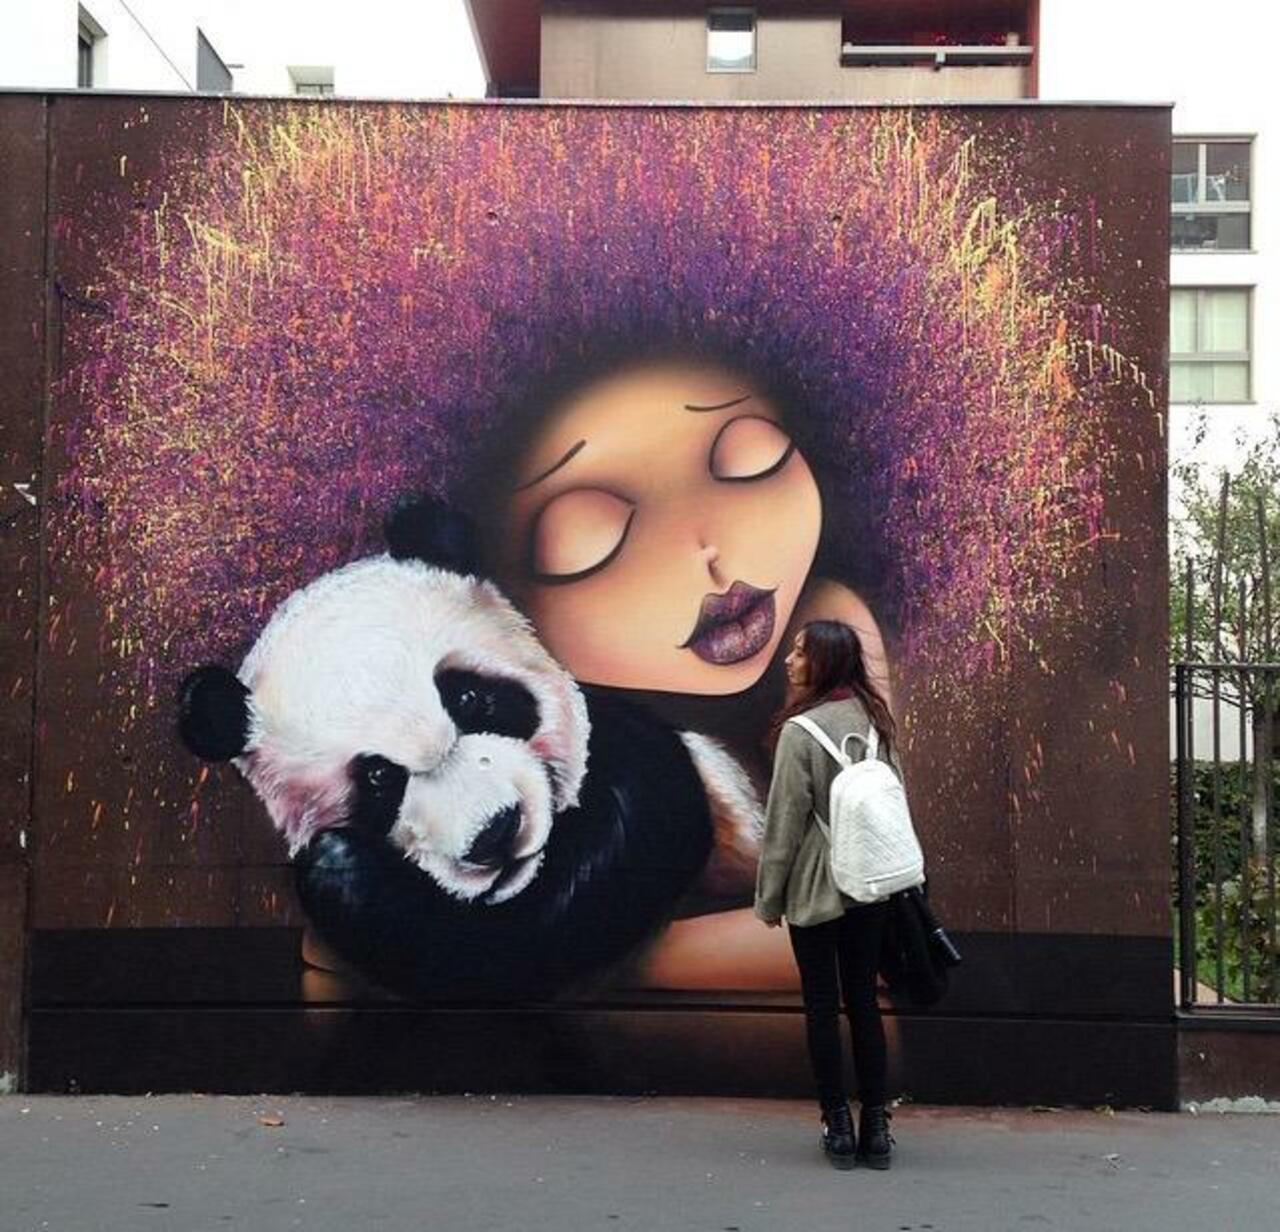 Street Art by VinieGraffiti in Paris 

#art #graffiti #mural #streetart http://t.co/krKejZGFKC http://fb.me/7xXd7WI9C